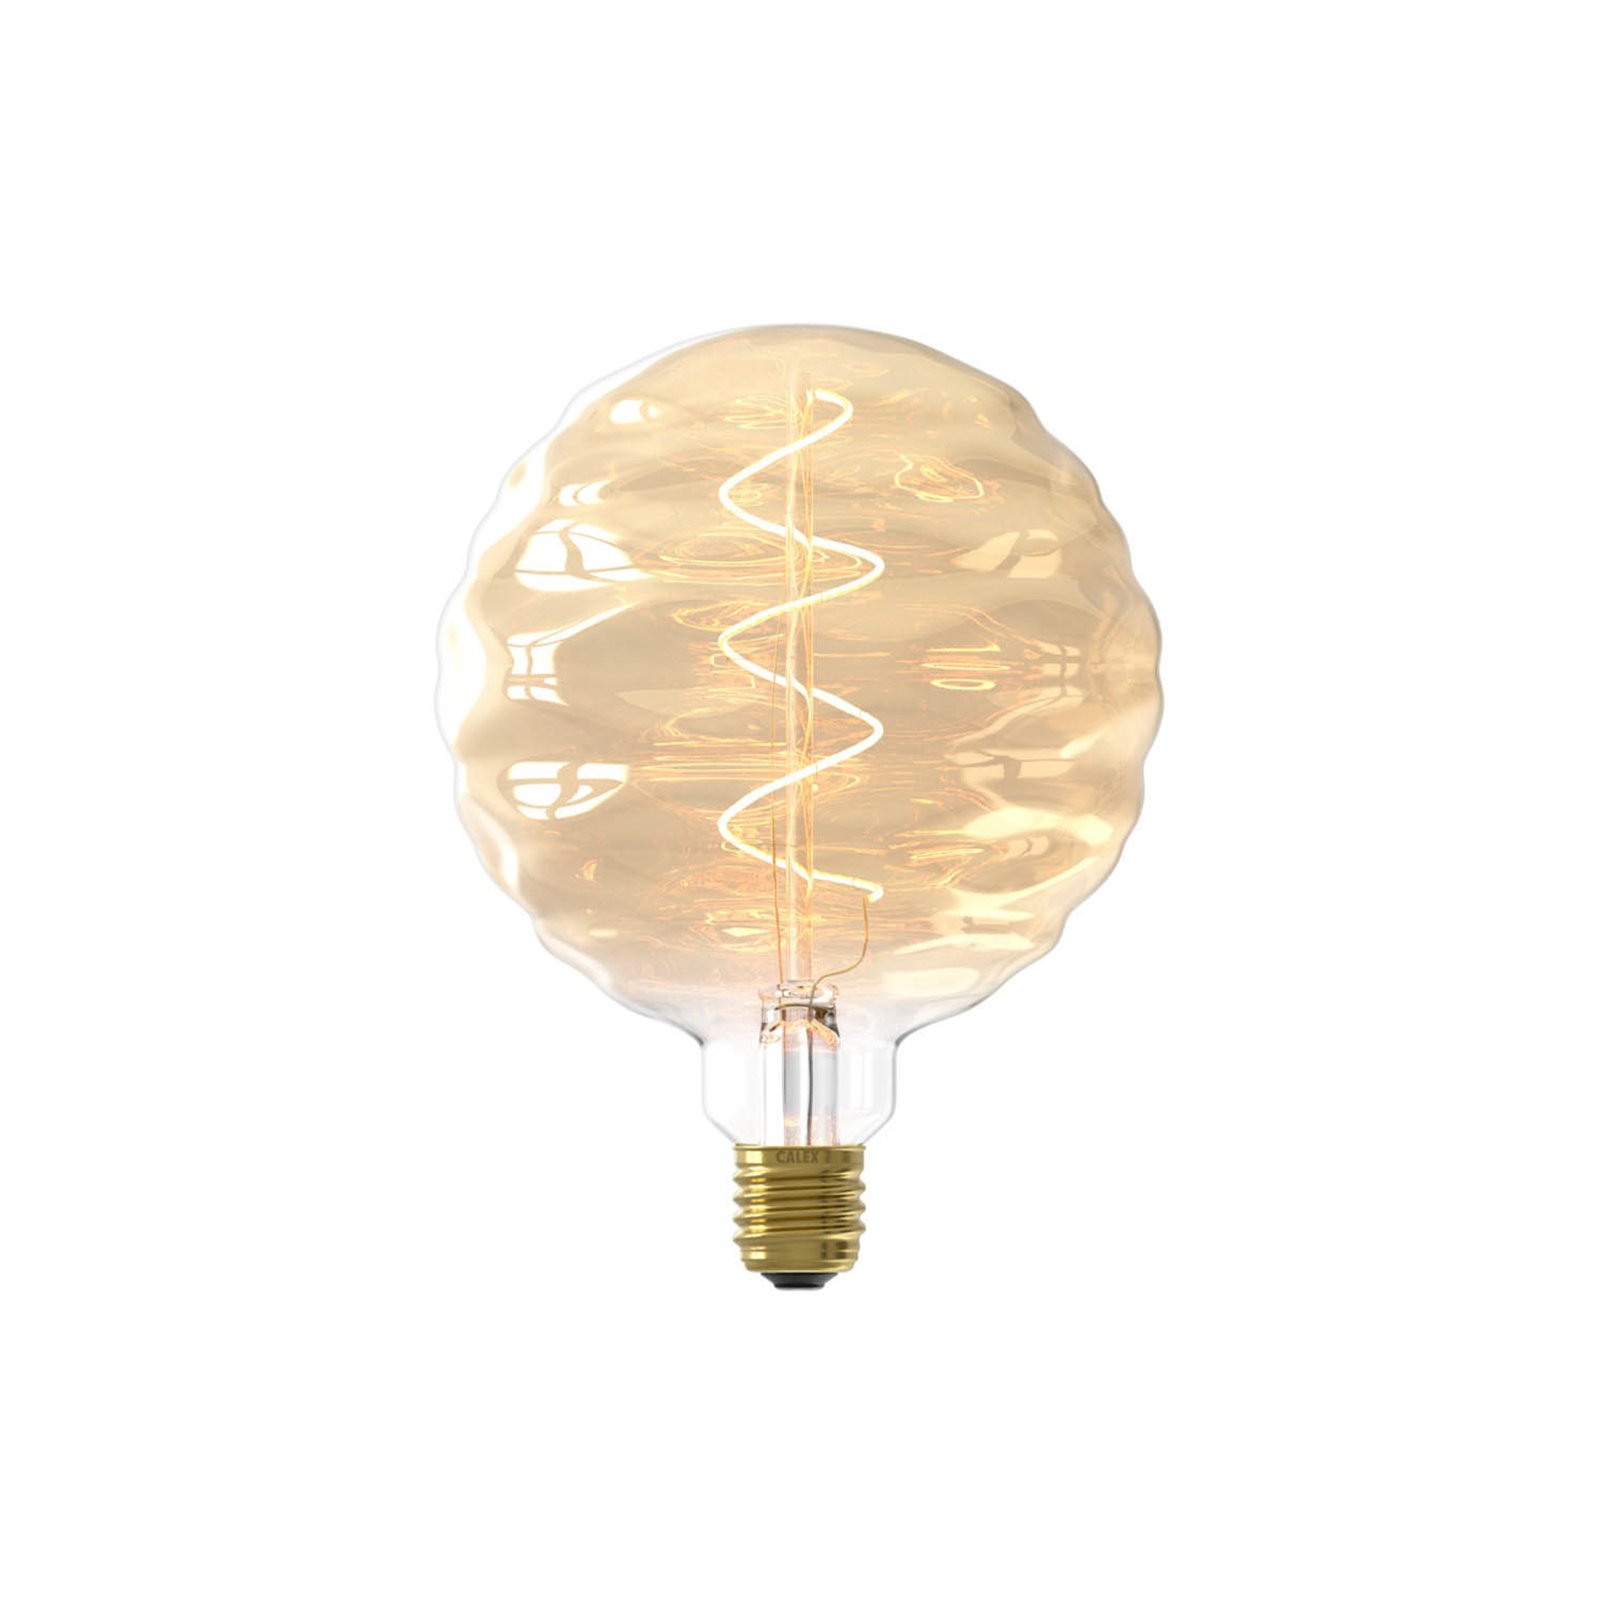 Calex Bilbao LED žiarovka E27 4W dim 1 800 K zlatá